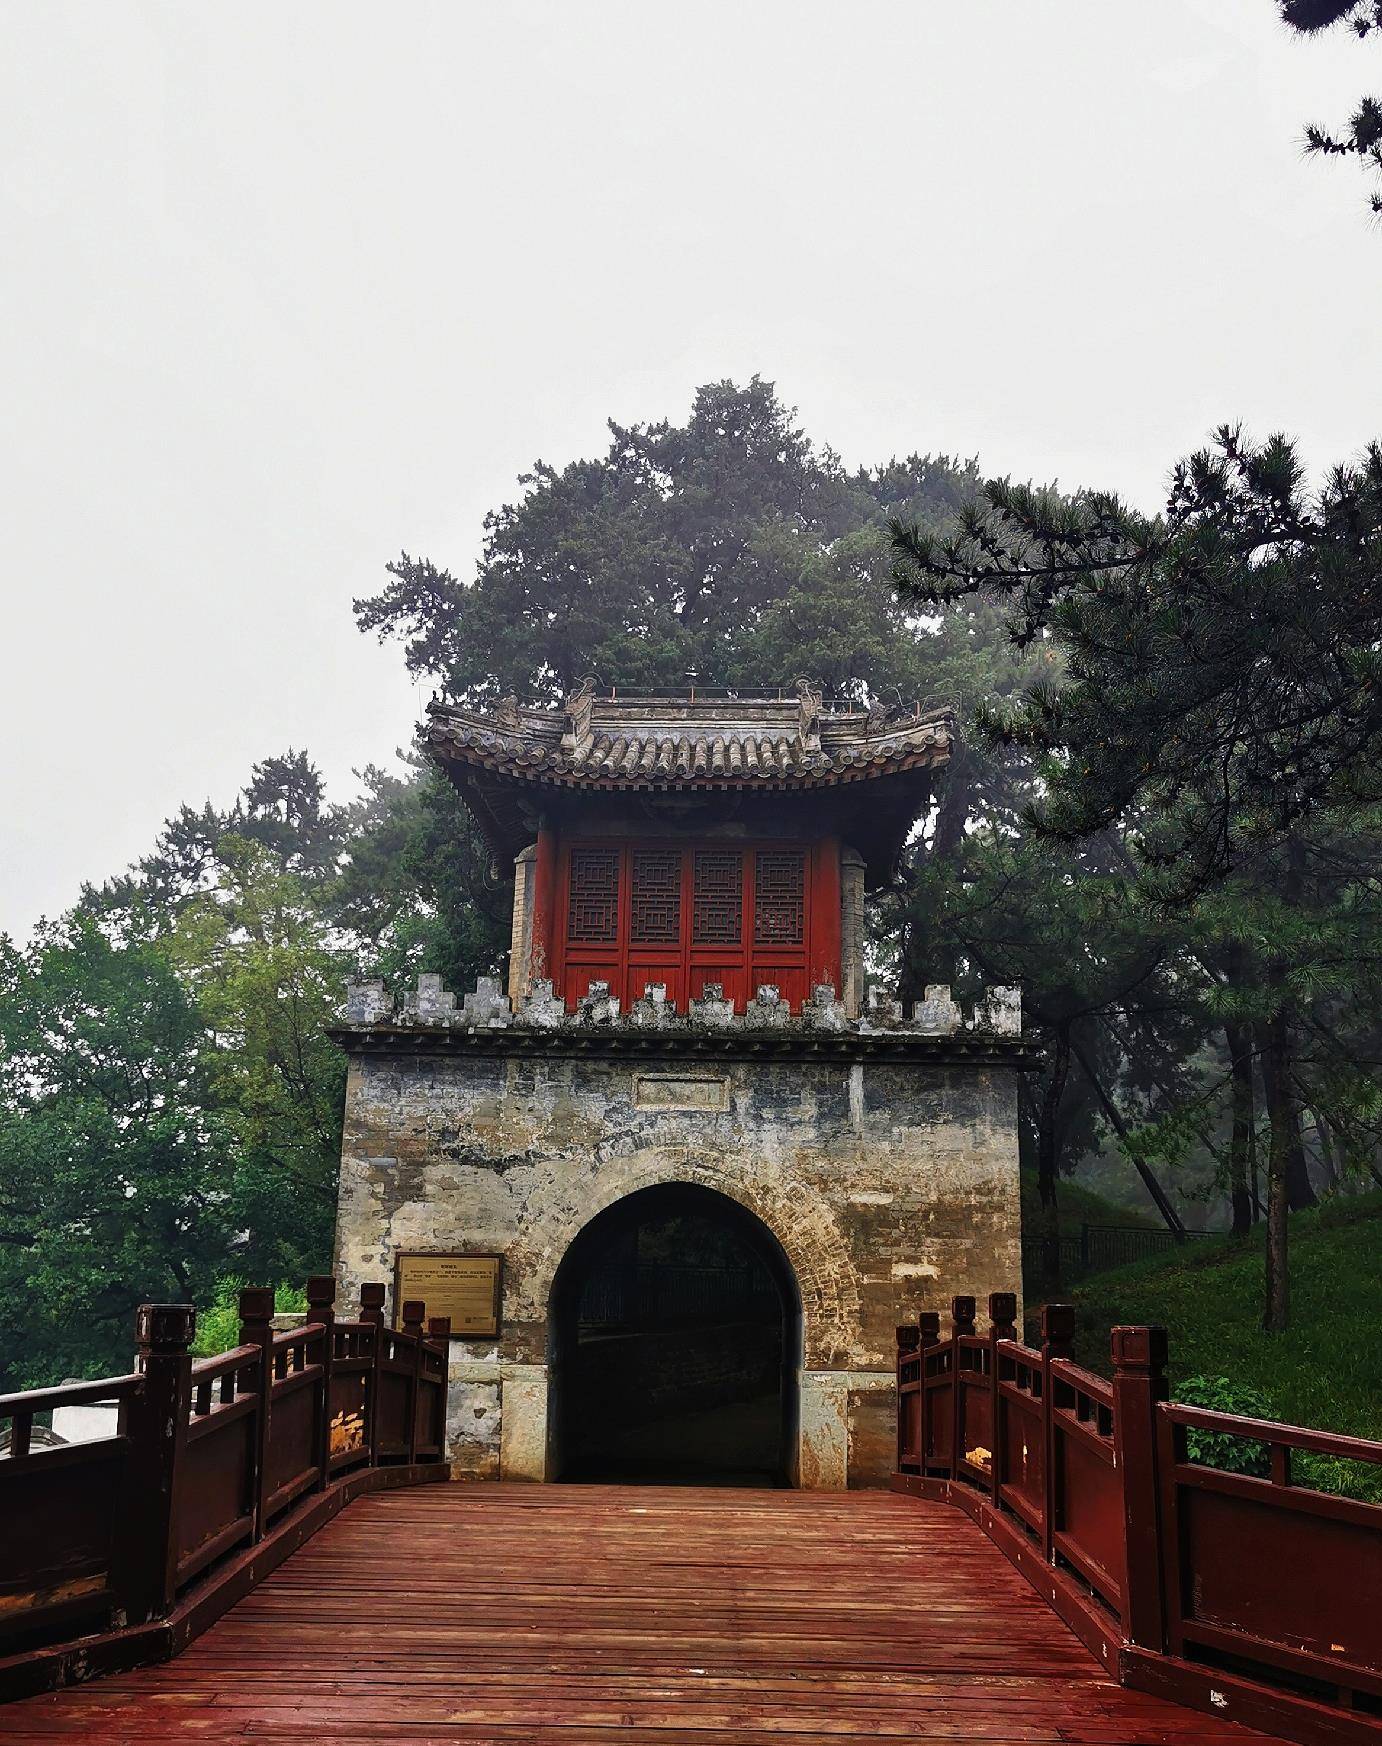 寅辉城关位于北京颐和园内的万寿山后湖景区,是颐和园内六大城关之一